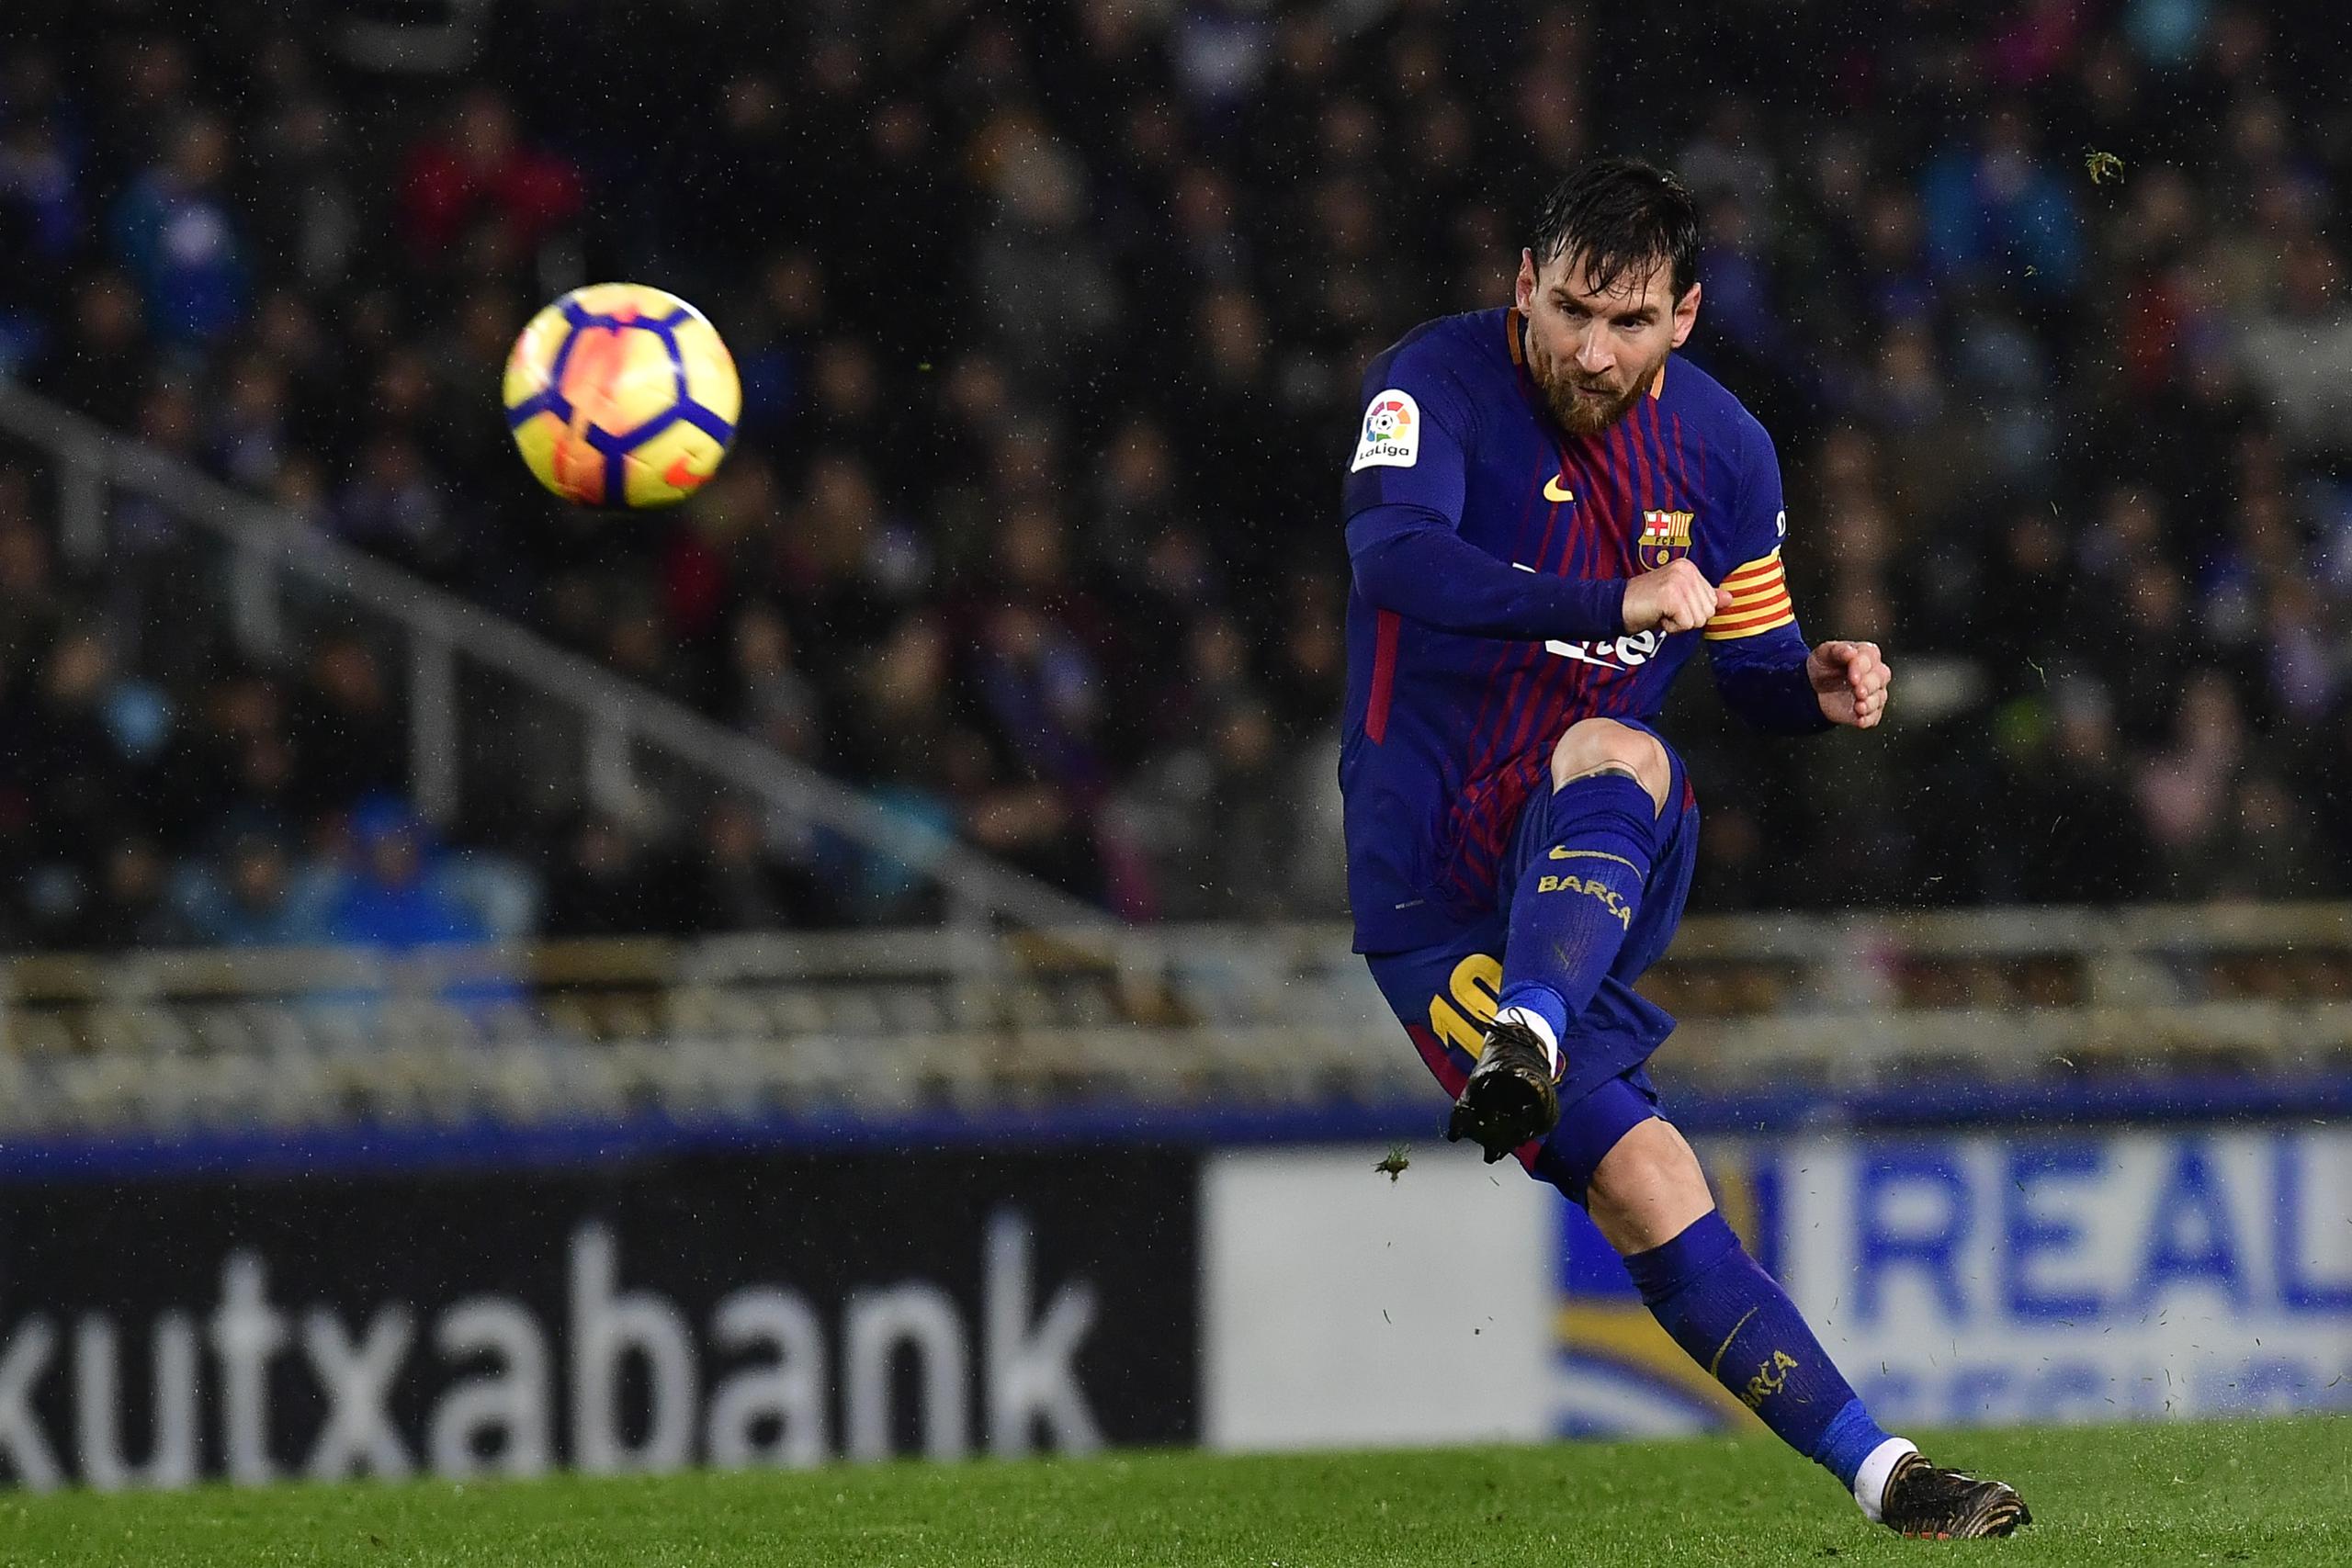 El club Barcelona no pudo retener a Lionel Messi debido a las reglas de equidad competitiva y financiera de la La Liga española.